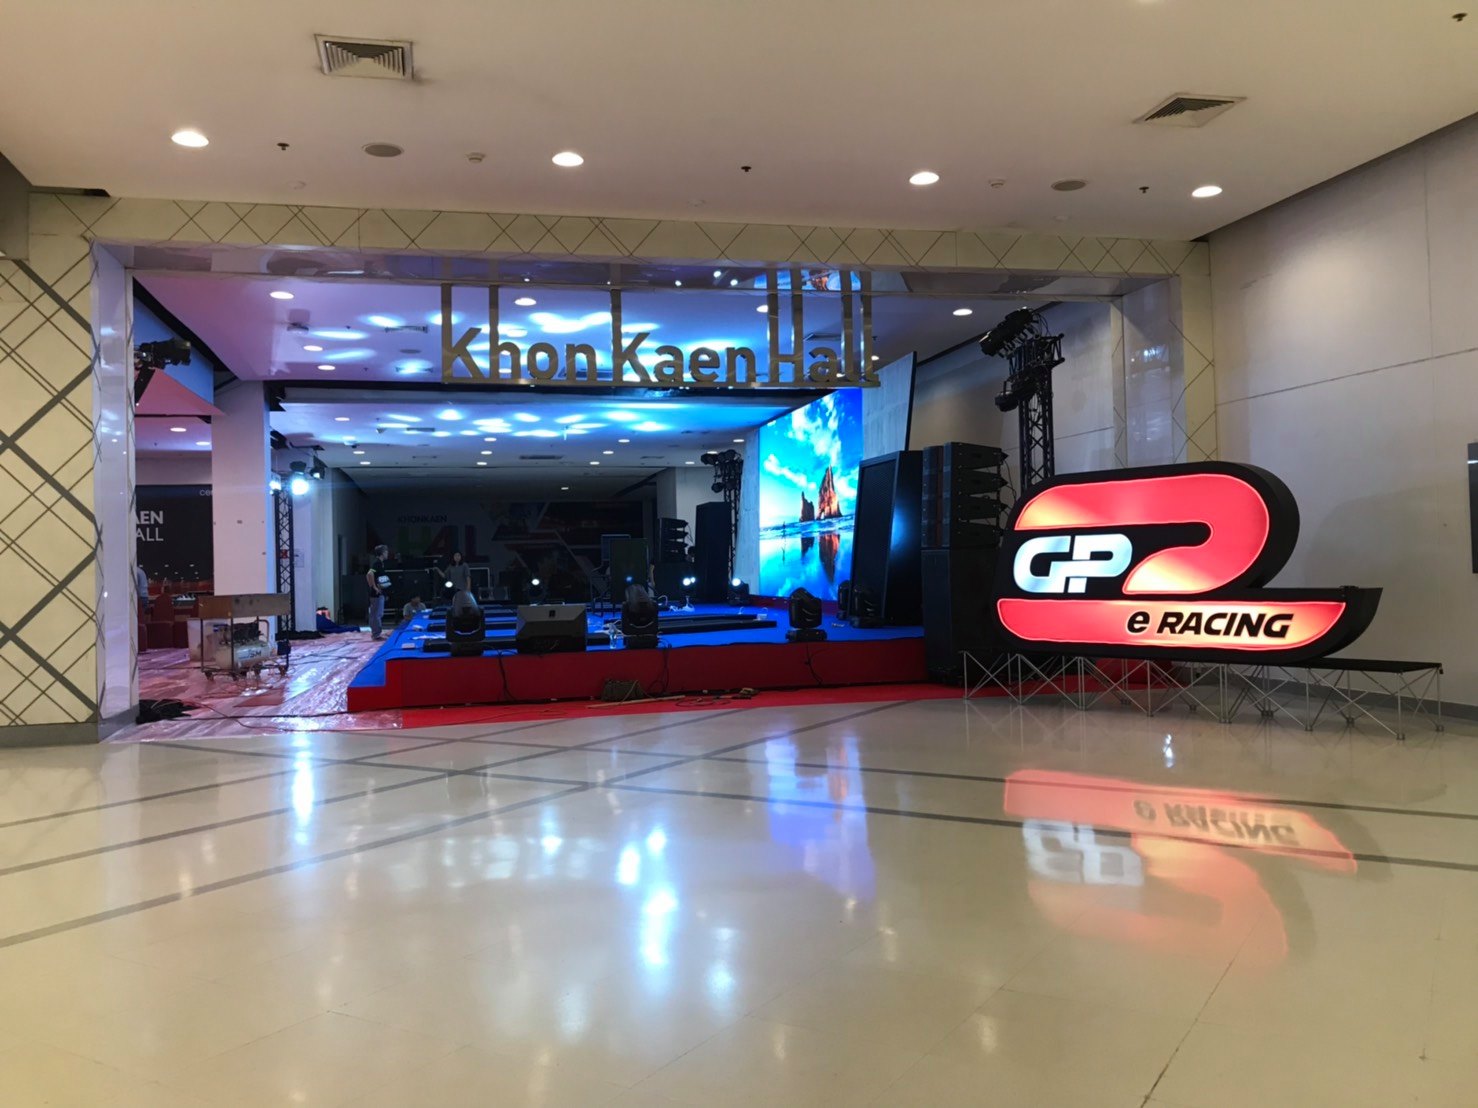 วัยรุ่นอีสานห้ามพลาด!! “GP eRacing Series 2019” การแข่งขัน Esports แนว Racing ที่ใหญ่ที่สุดในไทย 19 – 21 ก.ค. 62 ที่เซ็นทรัลฯ ขอนแก่น